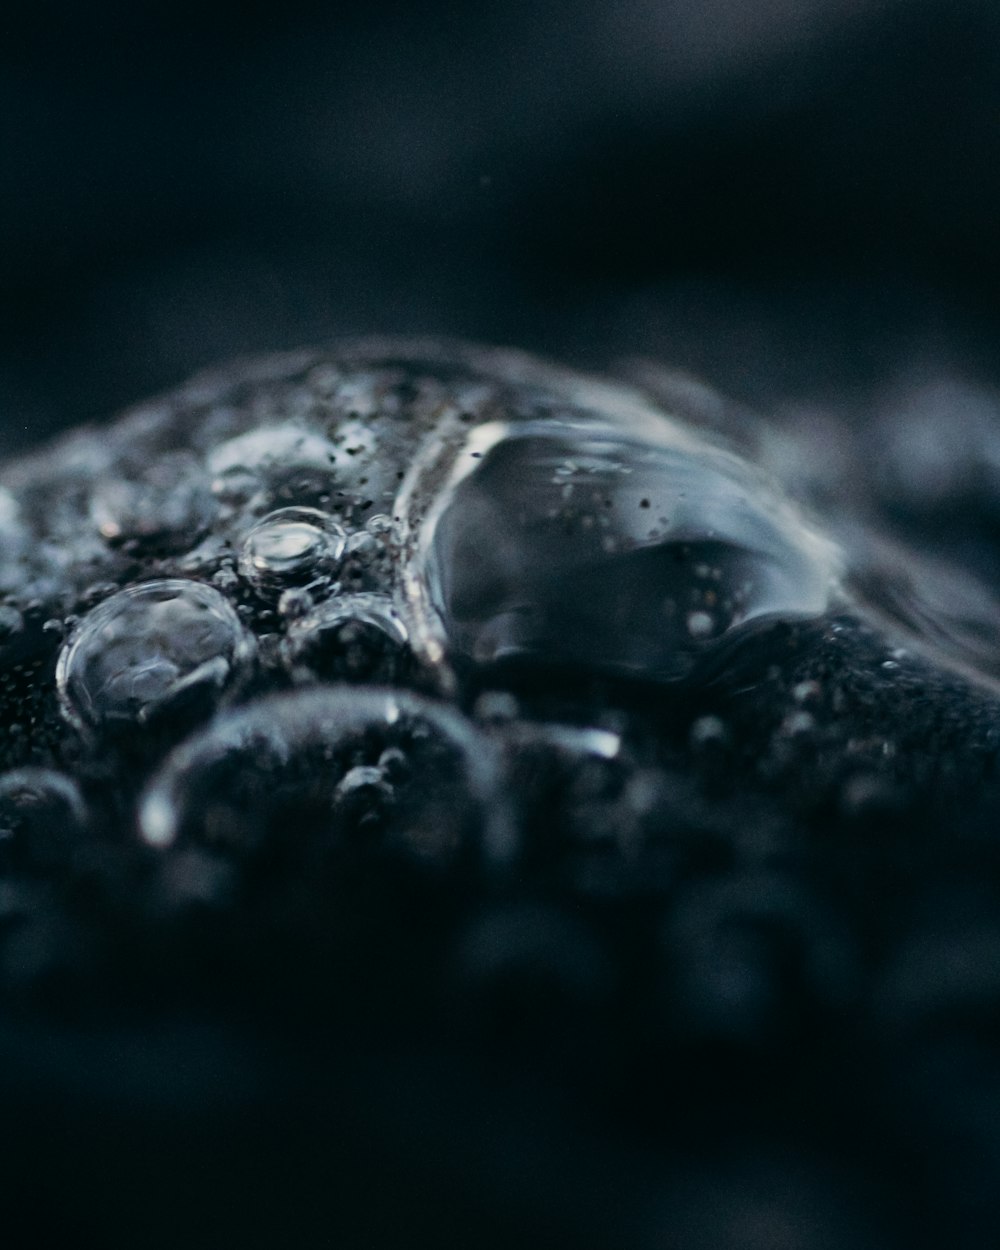 um close up de gotículas de água em uma superfície preta